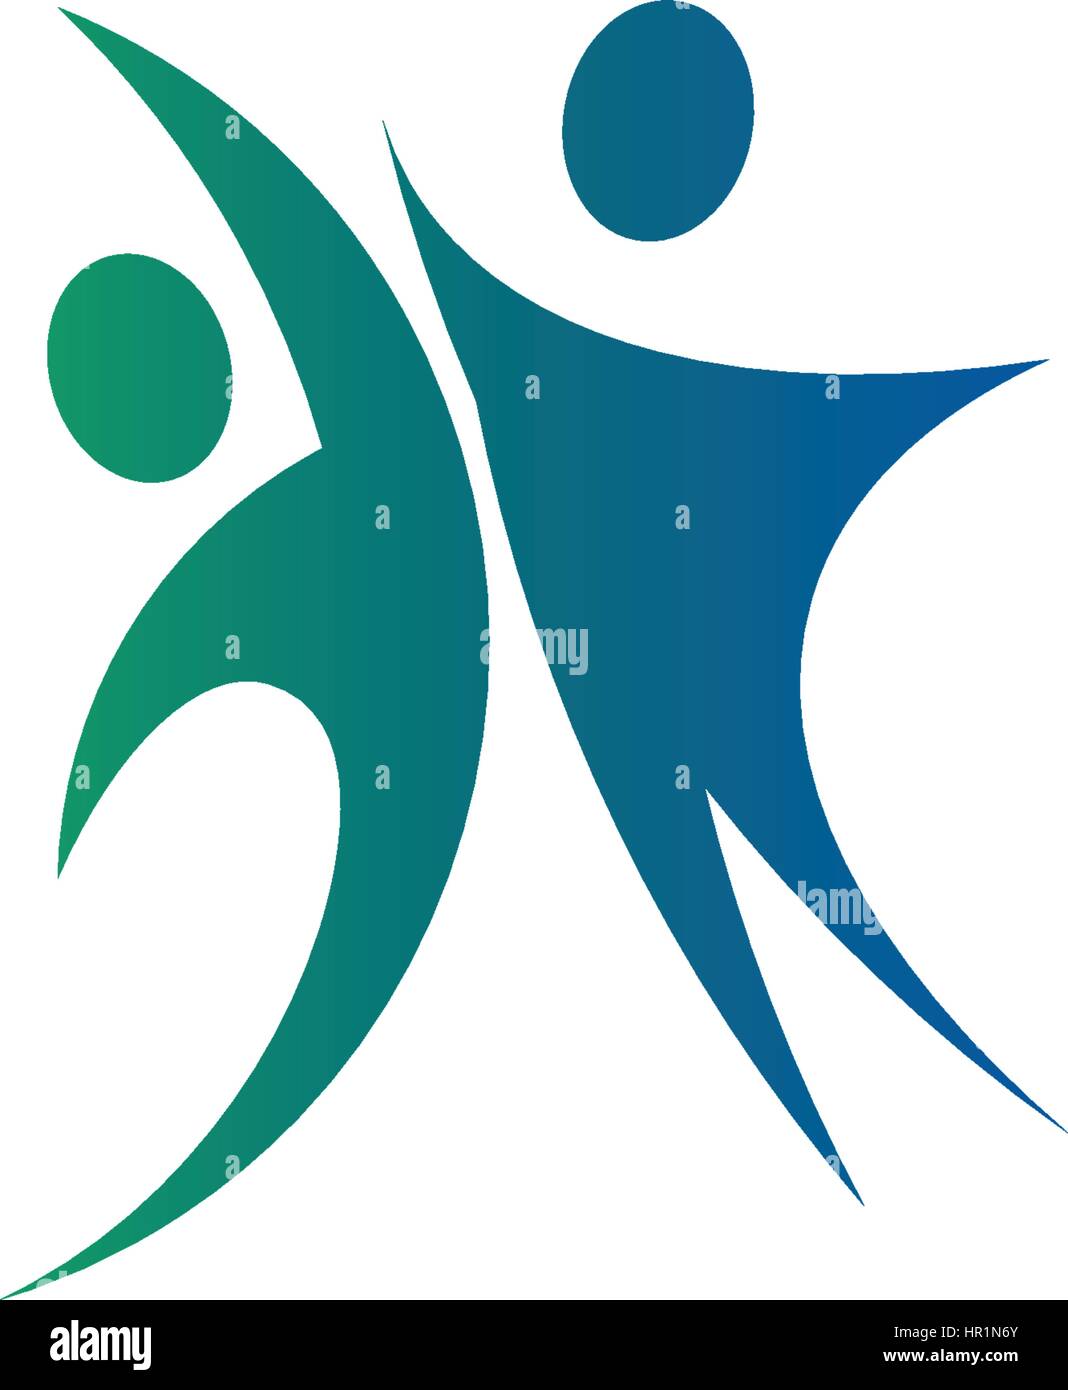 Résumé isolés couleur bleu et vert, deux personnes se tenant la main logo sur fond blanc vector illustration. Illustration de Vecteur